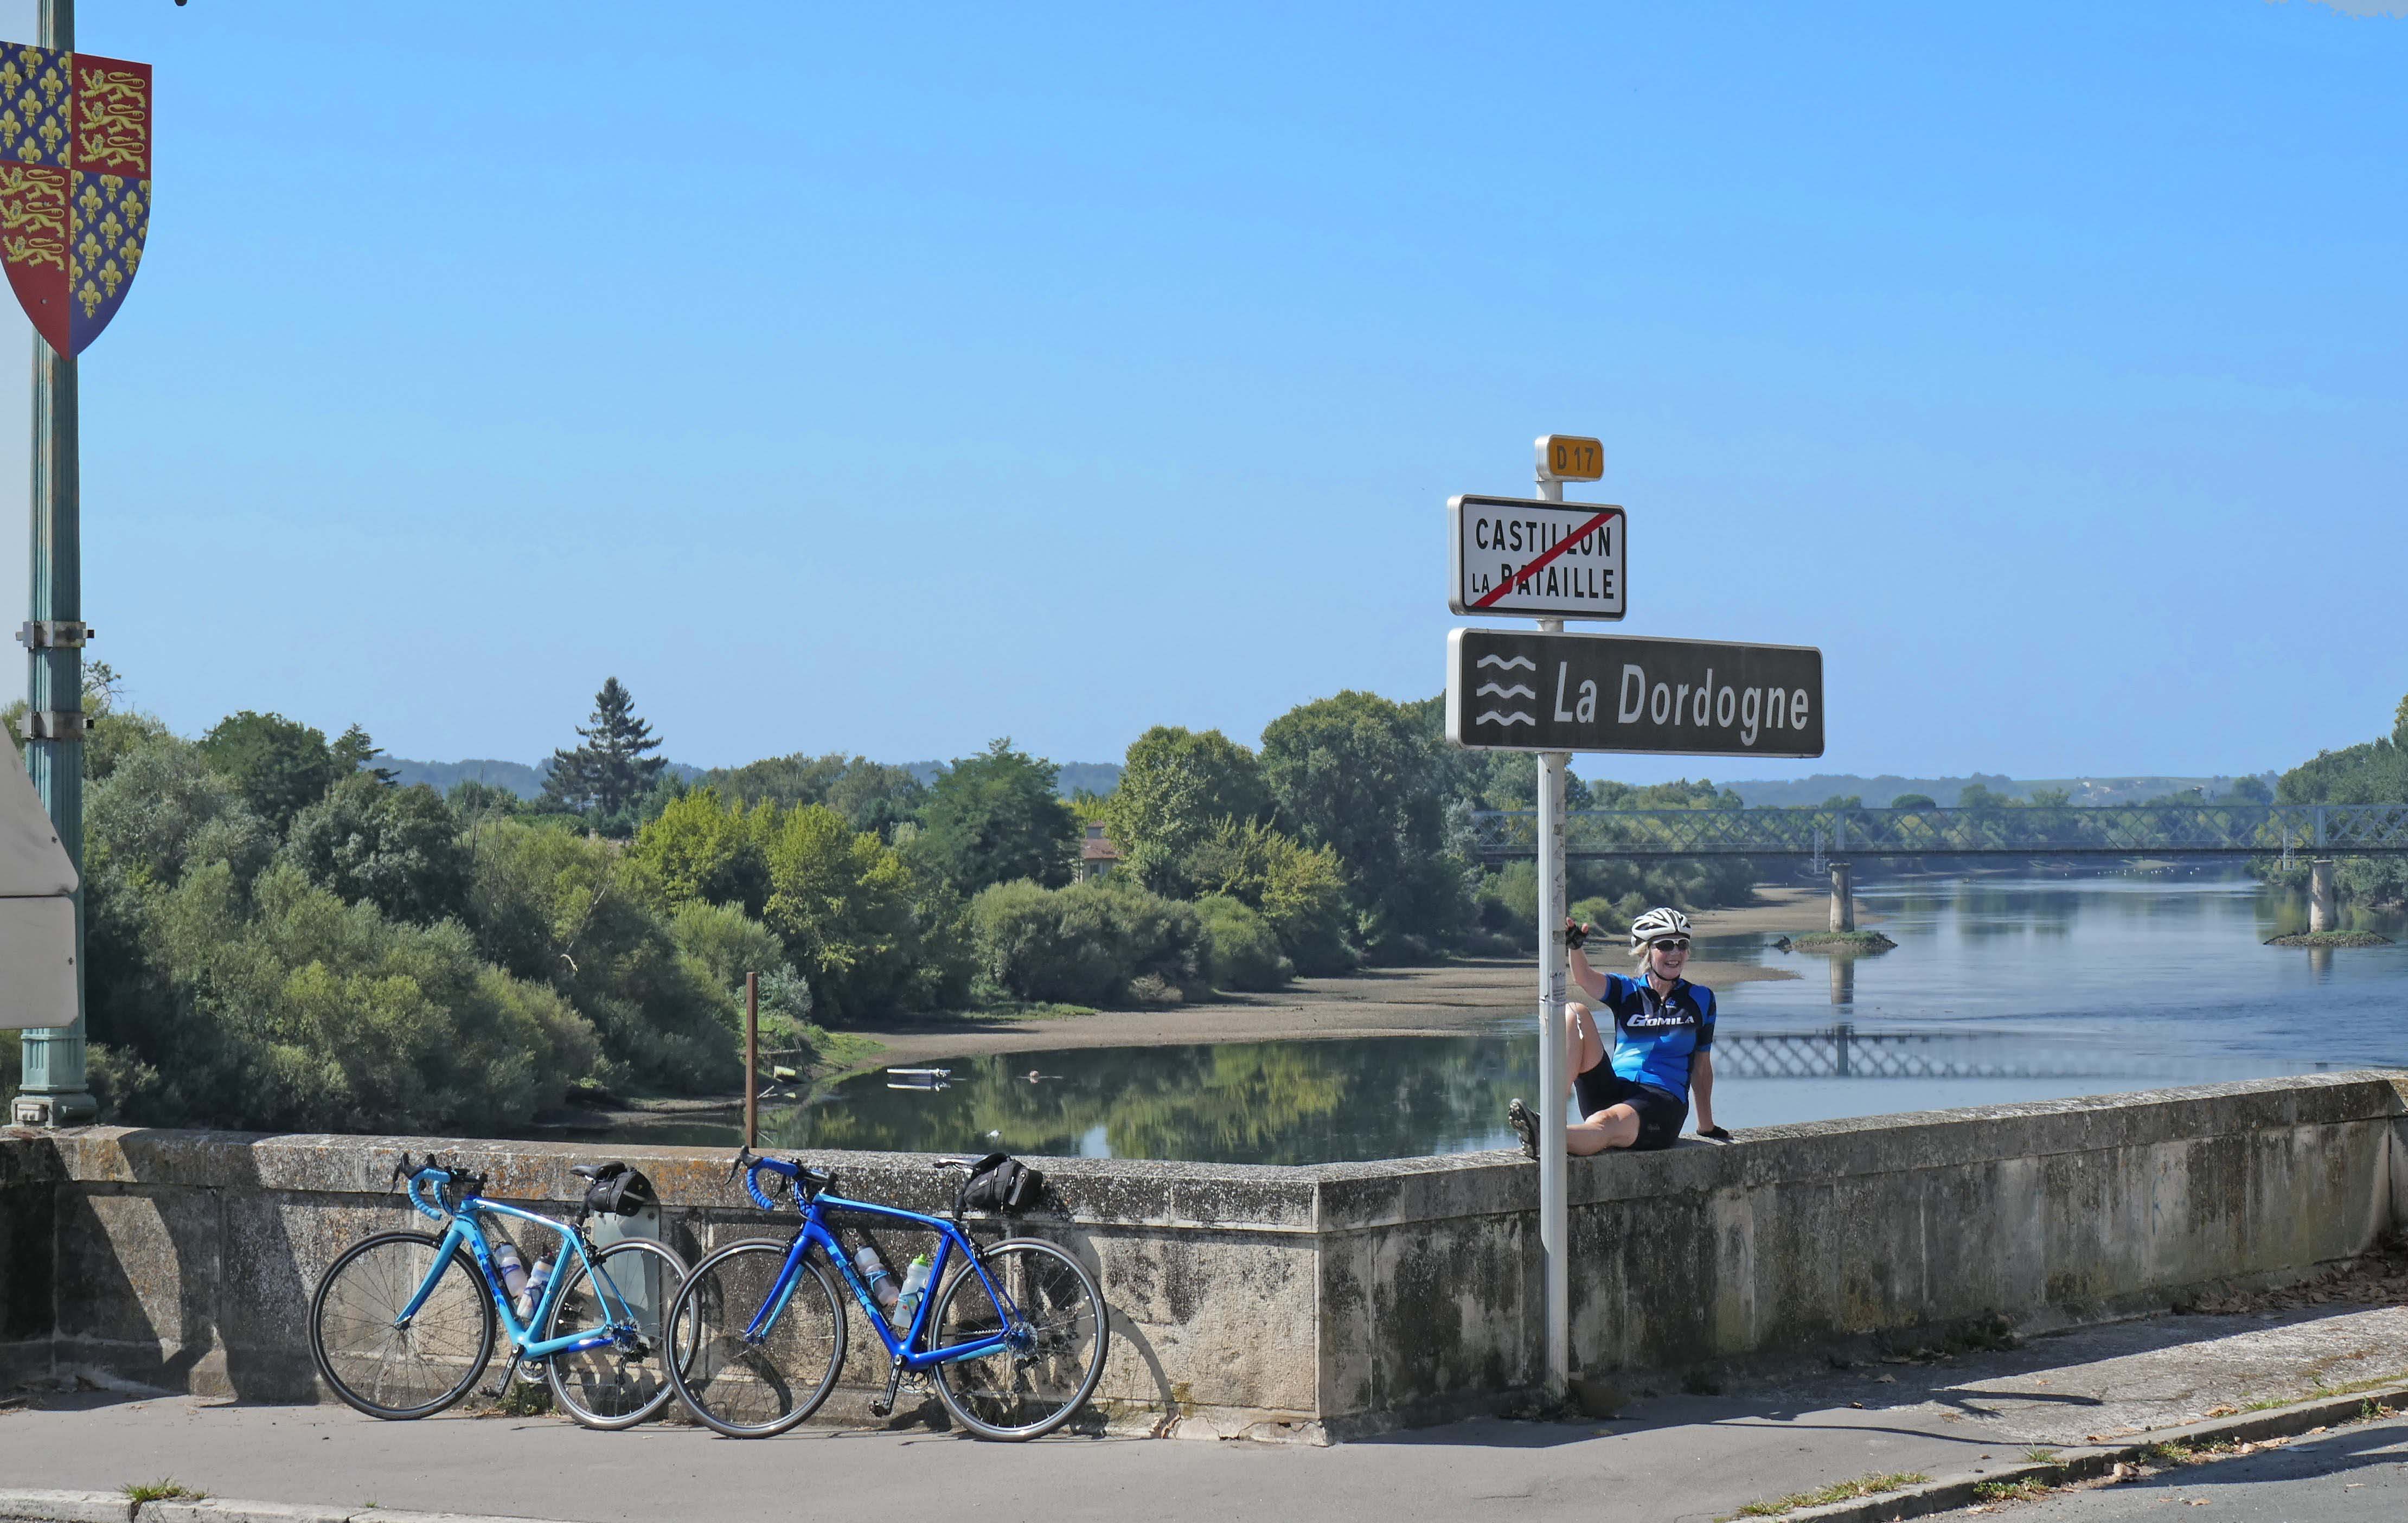 Crossing the Dordogne